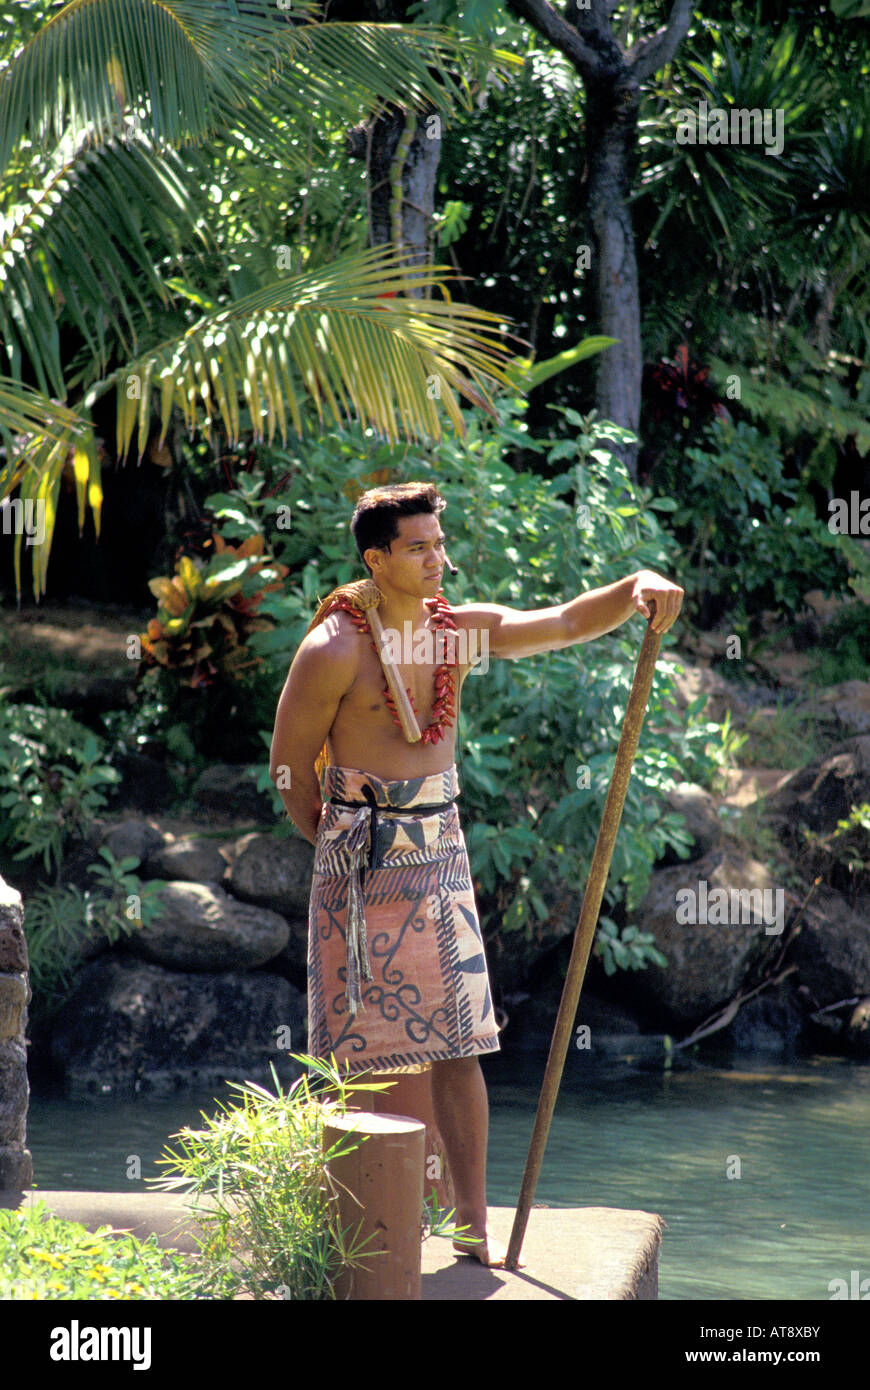 Hula and Hawaiian practices at the polynesian cultural center, north ...